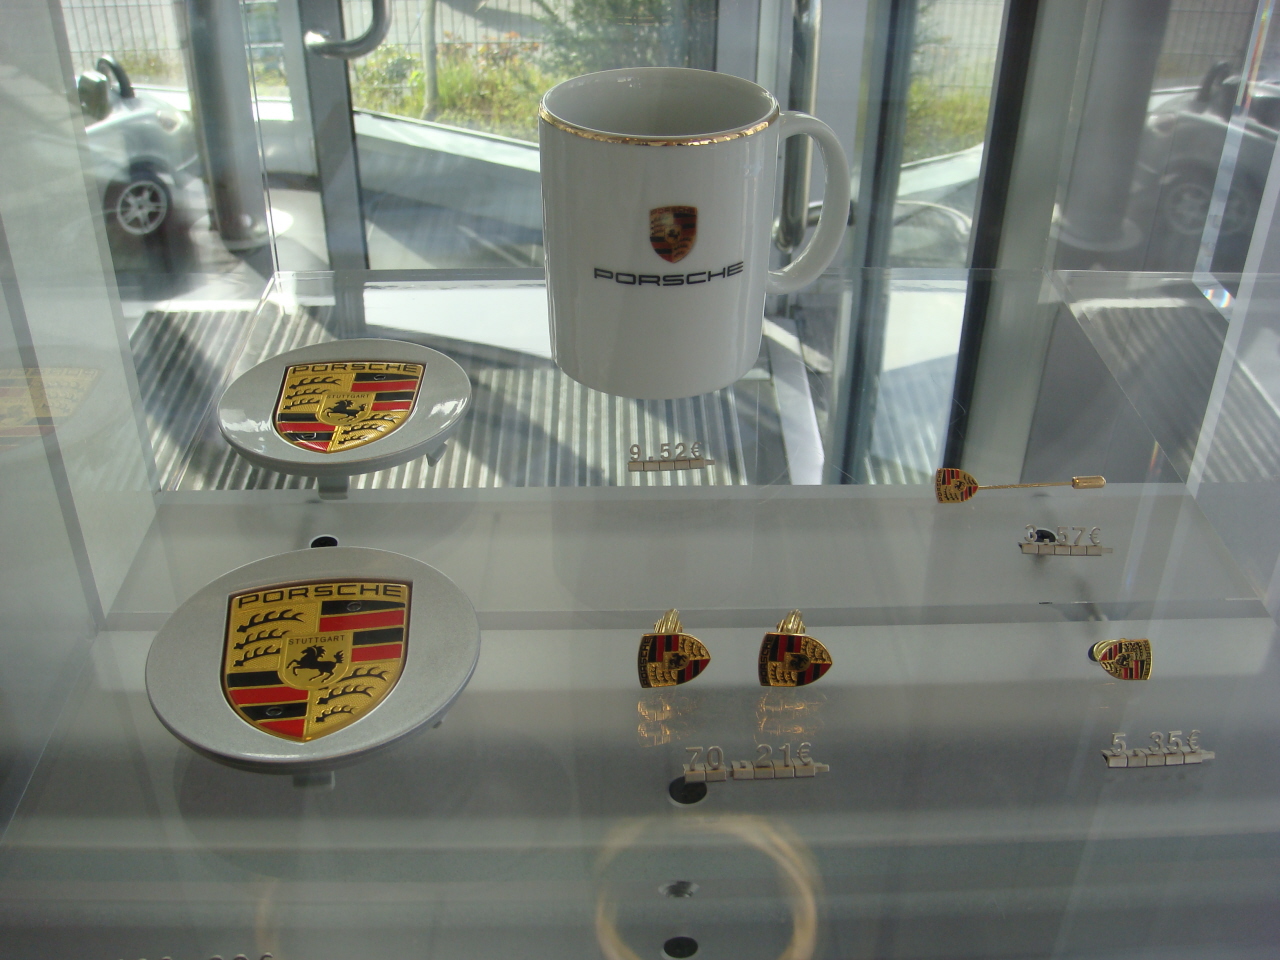 Visita Rapida a Porsche / Fast Visit to Porsche-porschemerchandising5.JPG